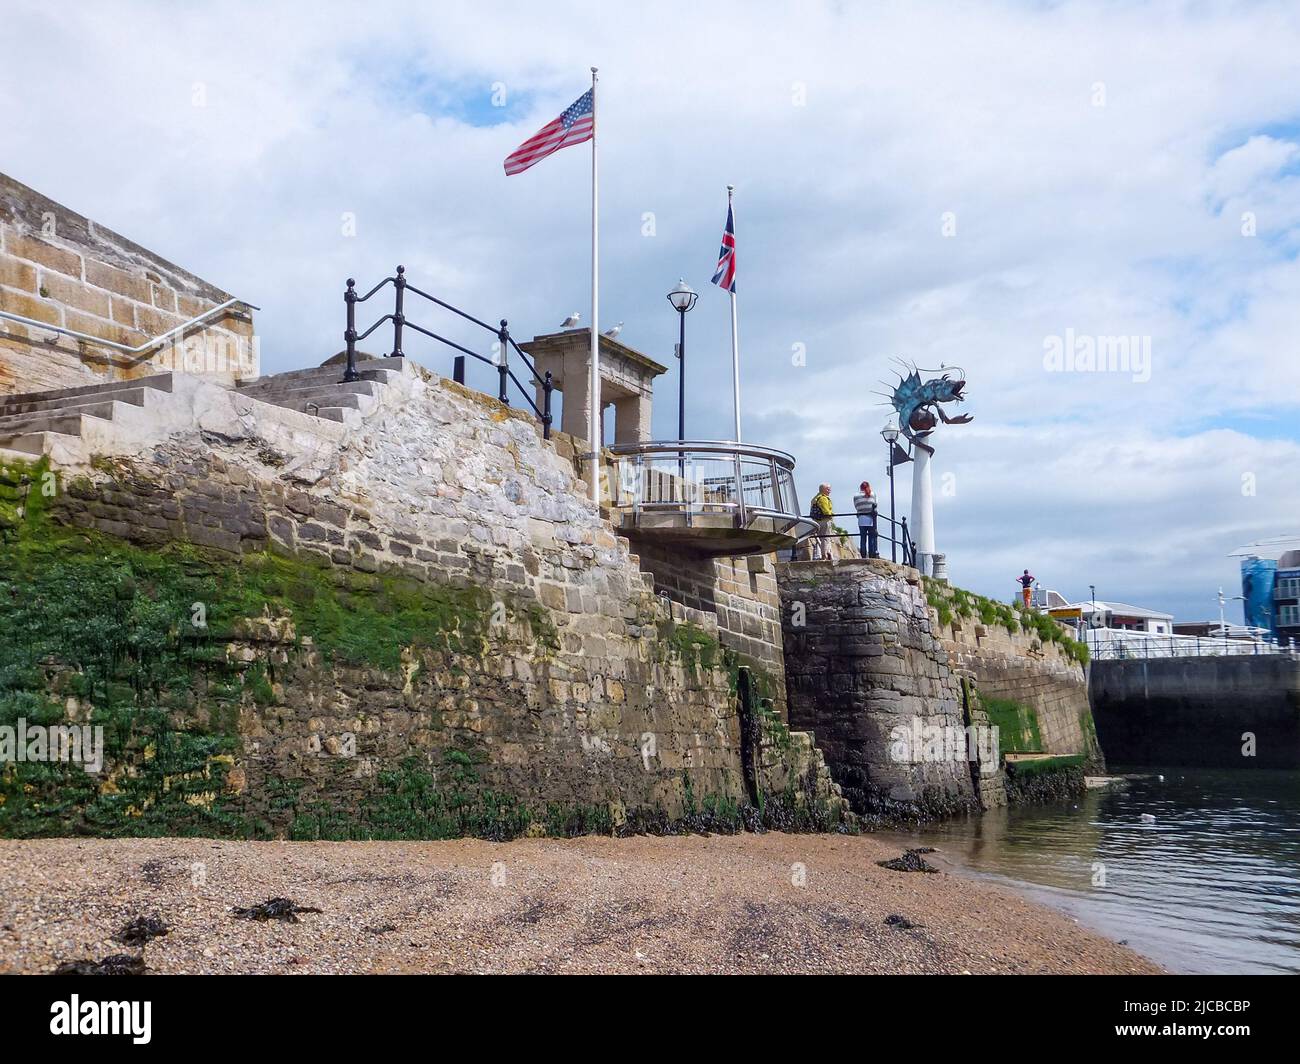 Das Mayflower Steps Memorial in Plymouth, Devon, England, erinnert an die Mayflower Expedition. Stockfoto